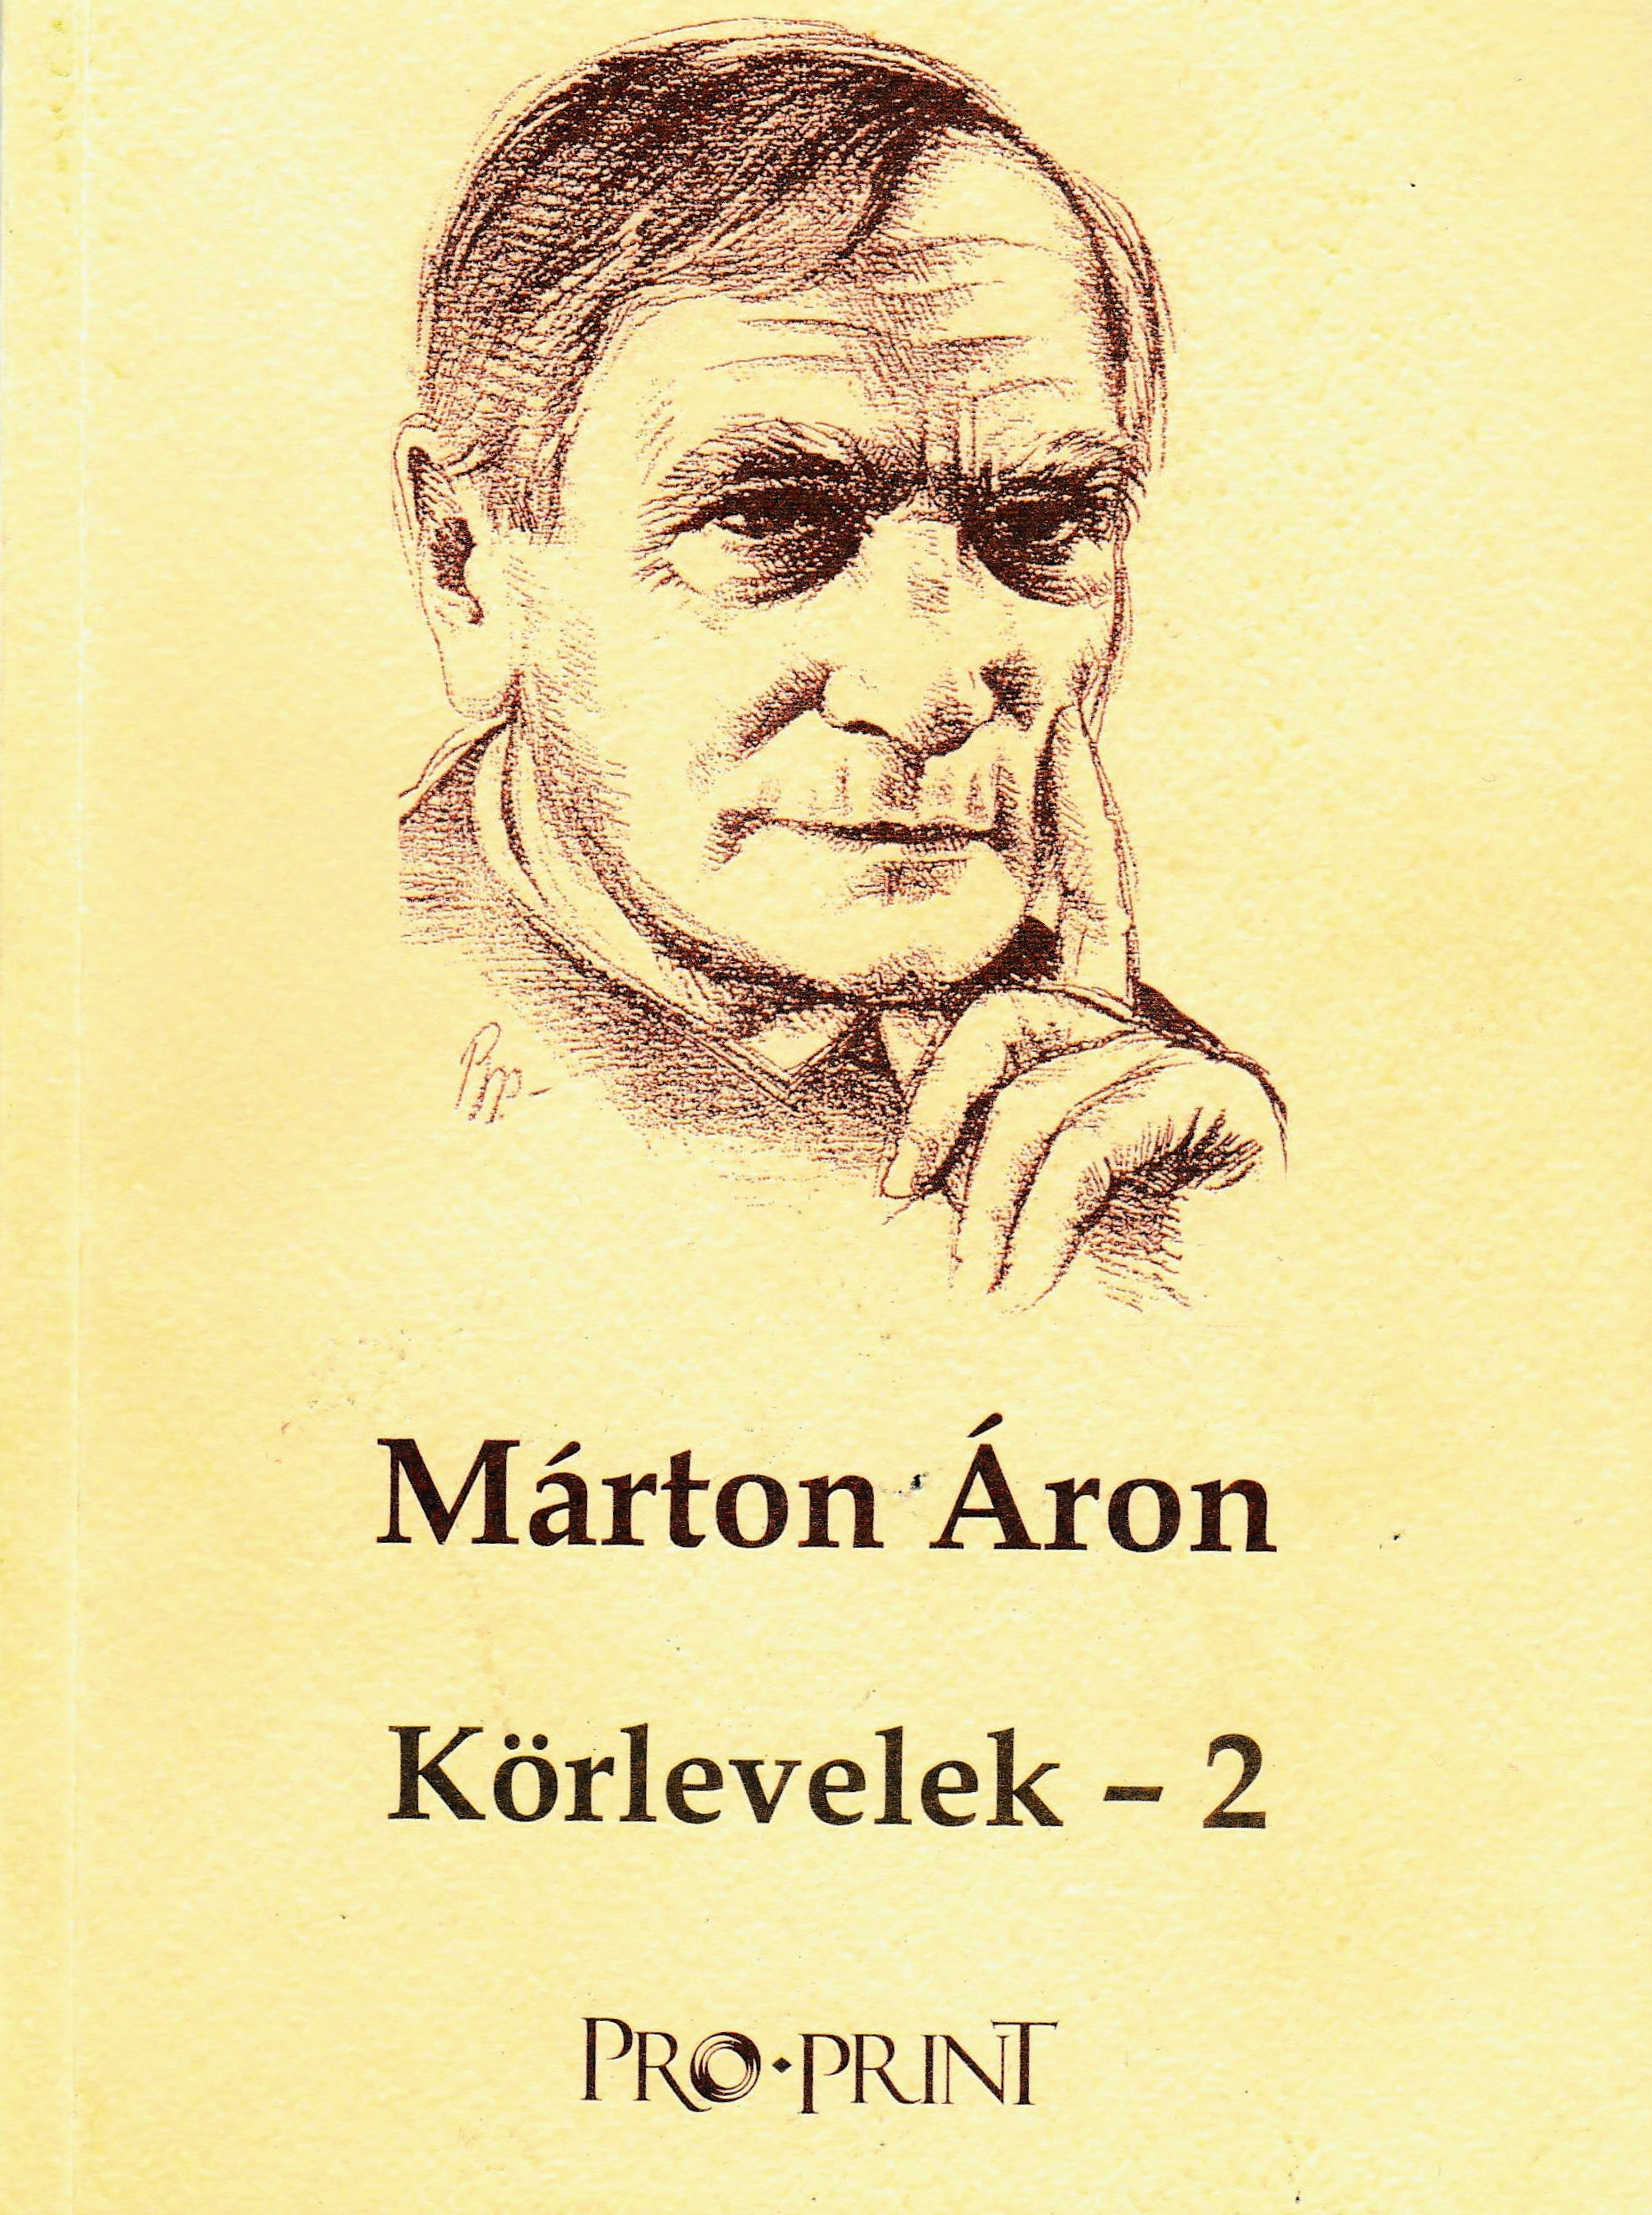 The frontcover of the book: Márton, Áron. 2015. Körlevelek – 2 (Circulars – 2), edited by József Marton. Csíkszereda: Pro-Print